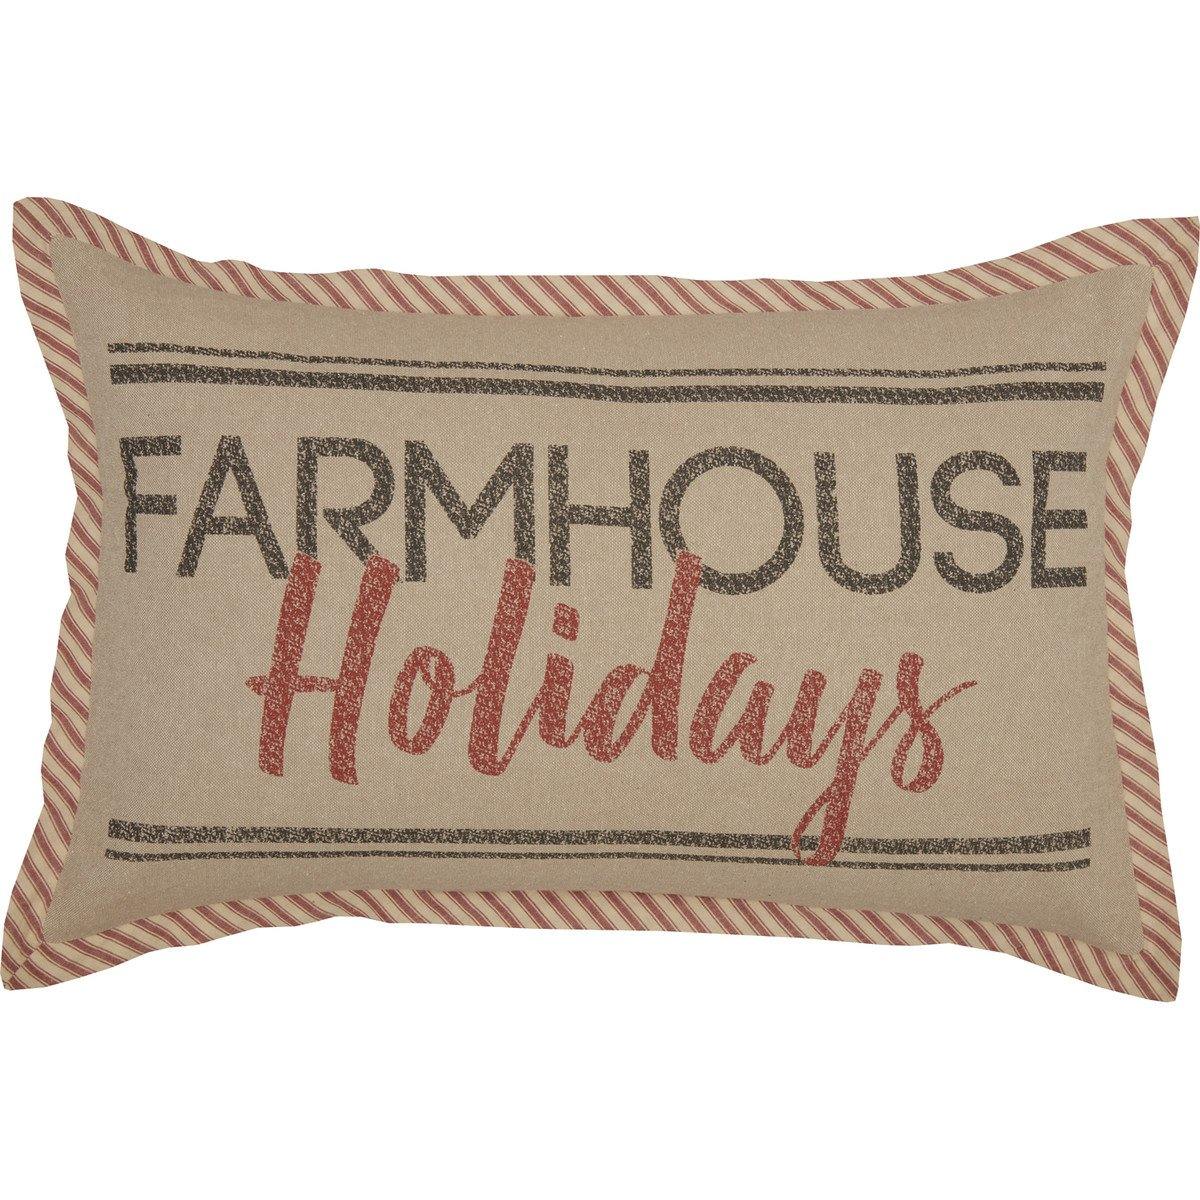 Sawyer Mill Farmhouse Holidays Pillow 14"x22" - The Fox Decor